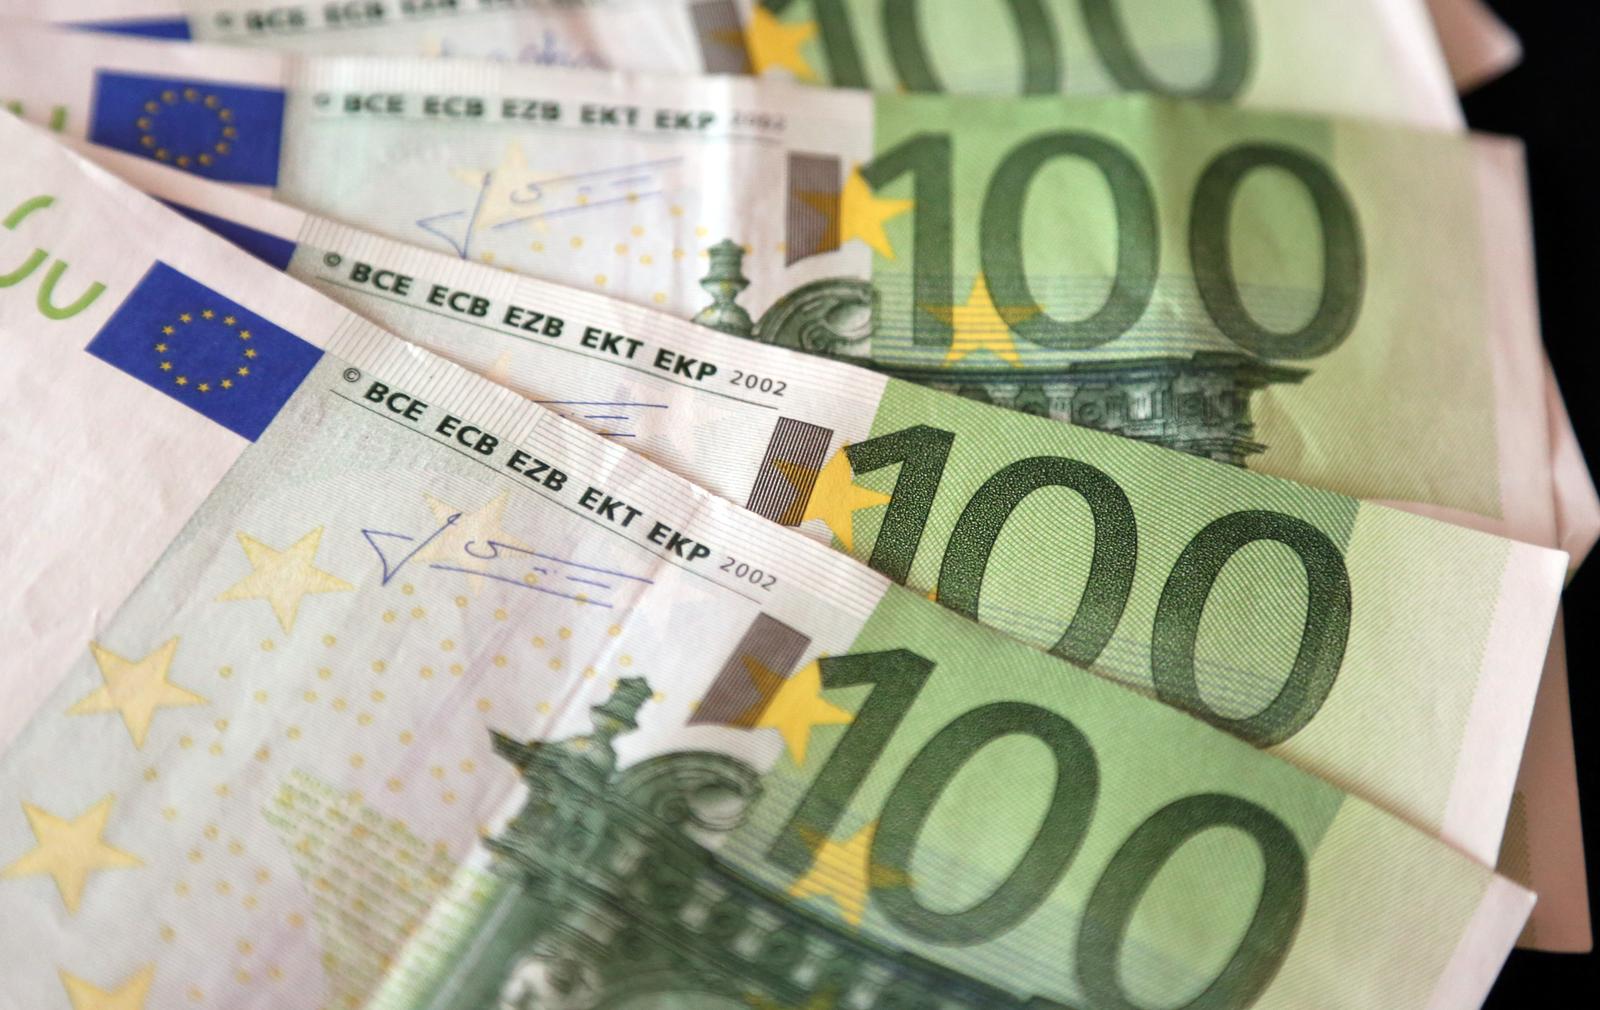 18.03.2015., Sibenik - Trzisni analiticari procjenjuju da ce vrijednost eura i americkog dolara uskoro biti izjednacena te da bi europska valuta mogla dodatno oslabjeti."nPhoto: Dusko Jaramaz/PIXSELL